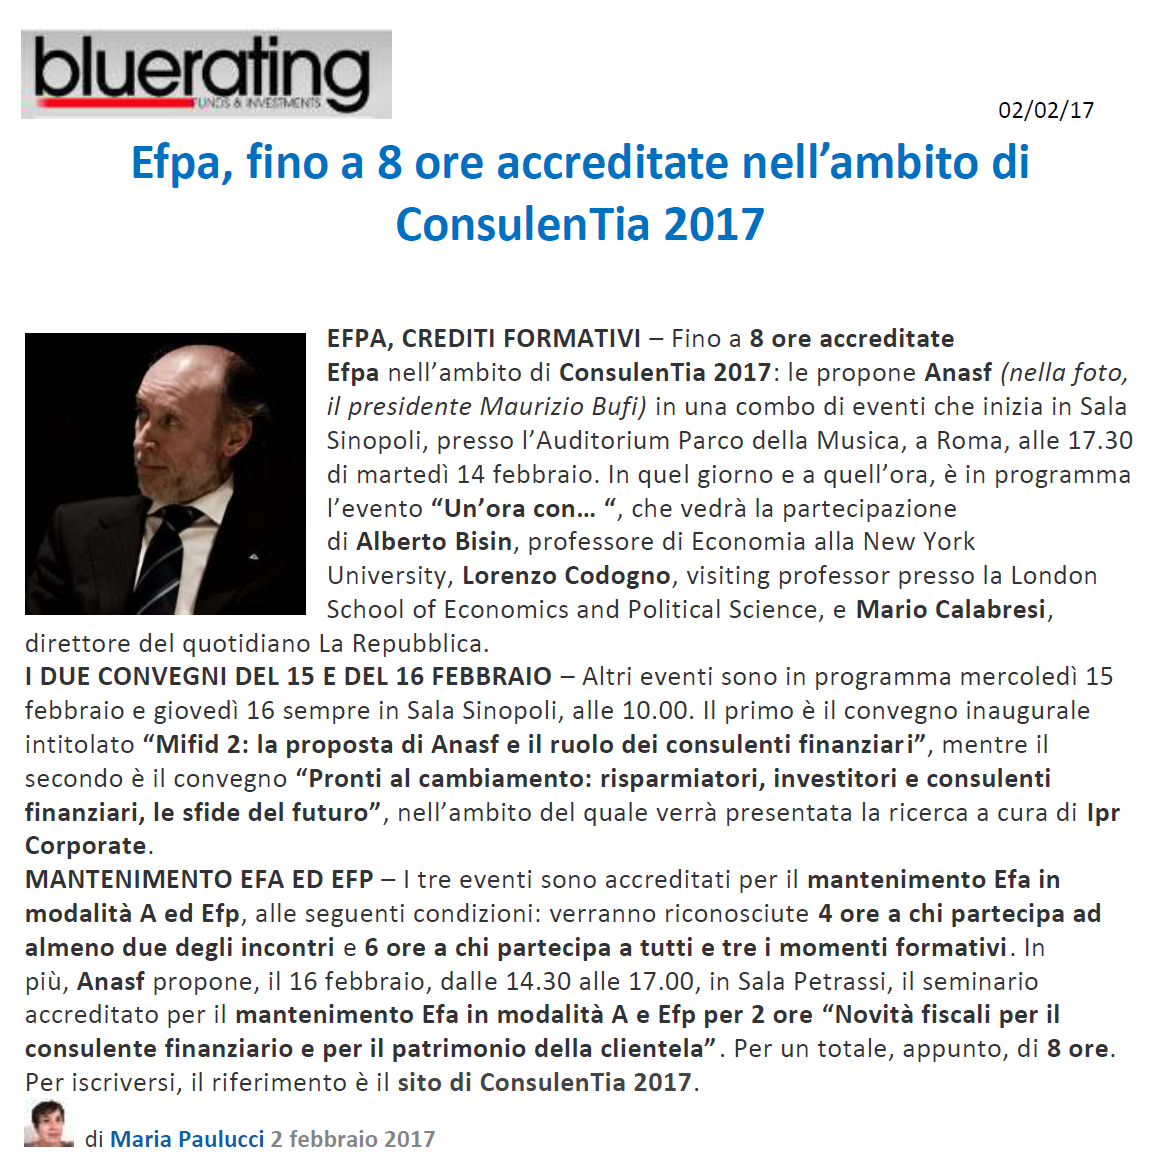 Bluerating - EFPA, fino a 8 ore accreditate nell'ambito di ConsulenTia 2017